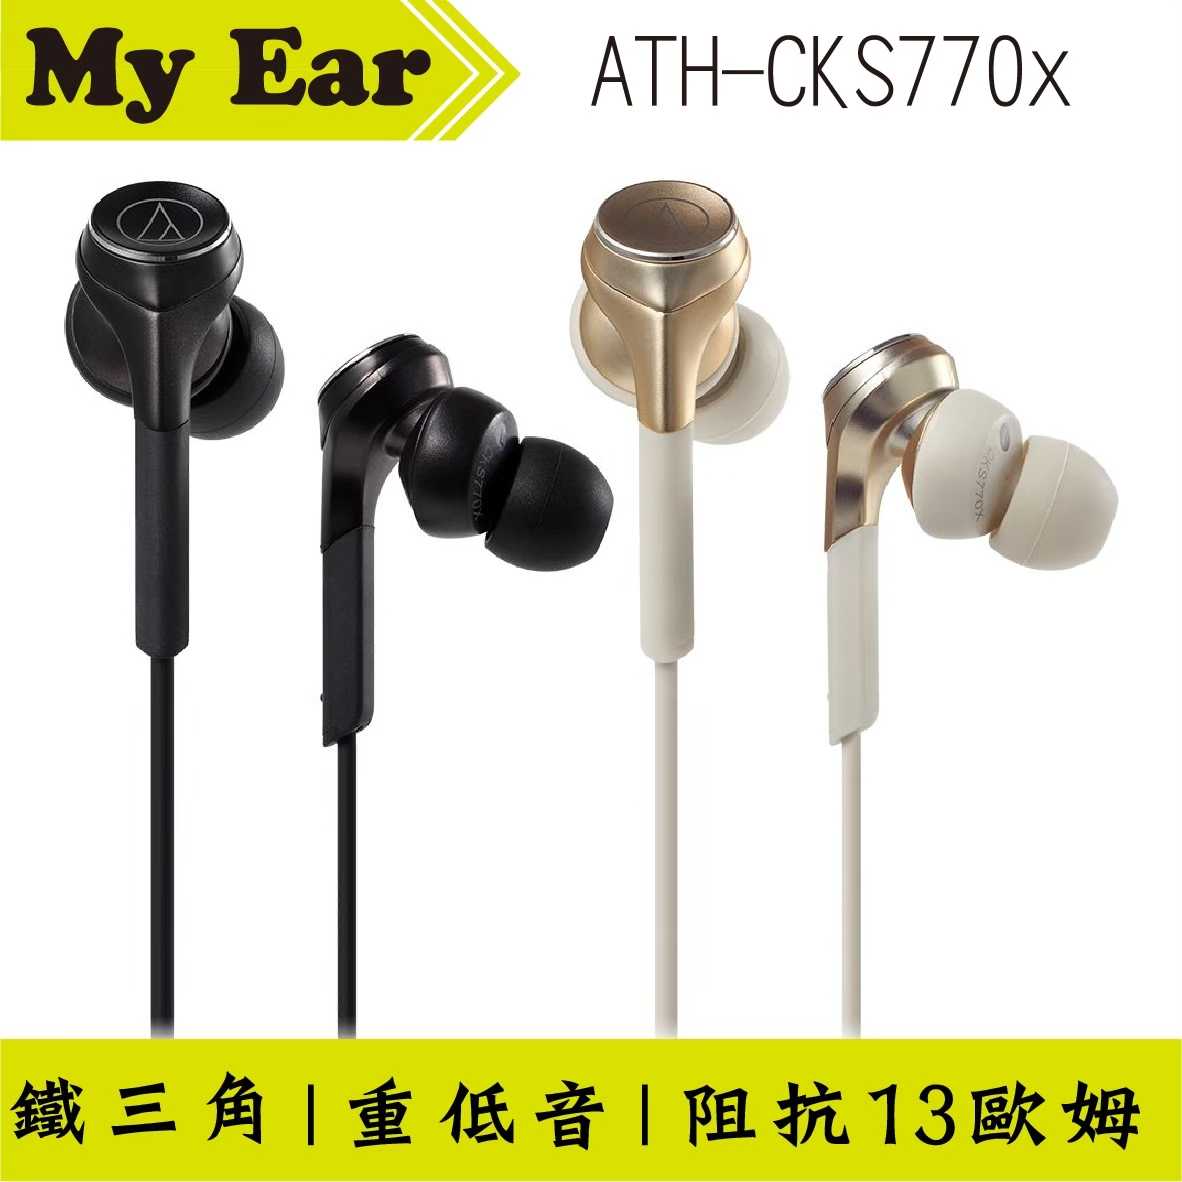 鐵三角 Cks770x 雙色 重低音 耳塞式 耳機 | My Ear 耳機專門店